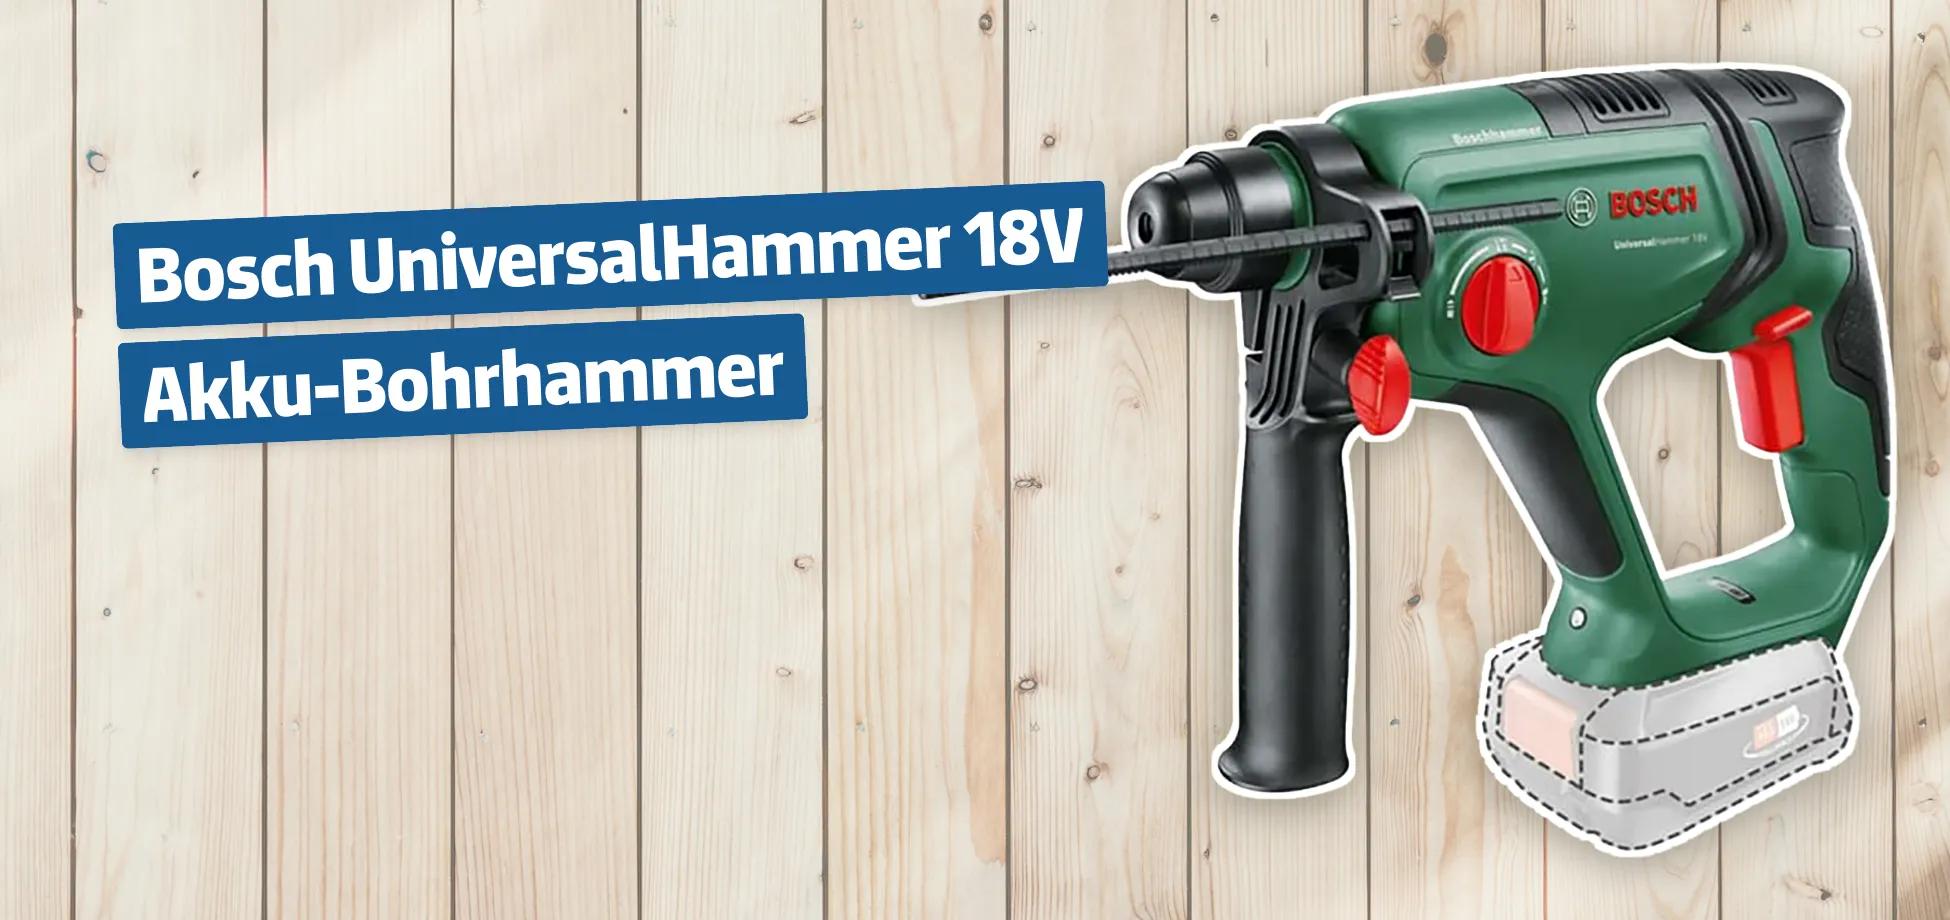 Bosch UniversalHammer 18V Akku-Bohrhammer